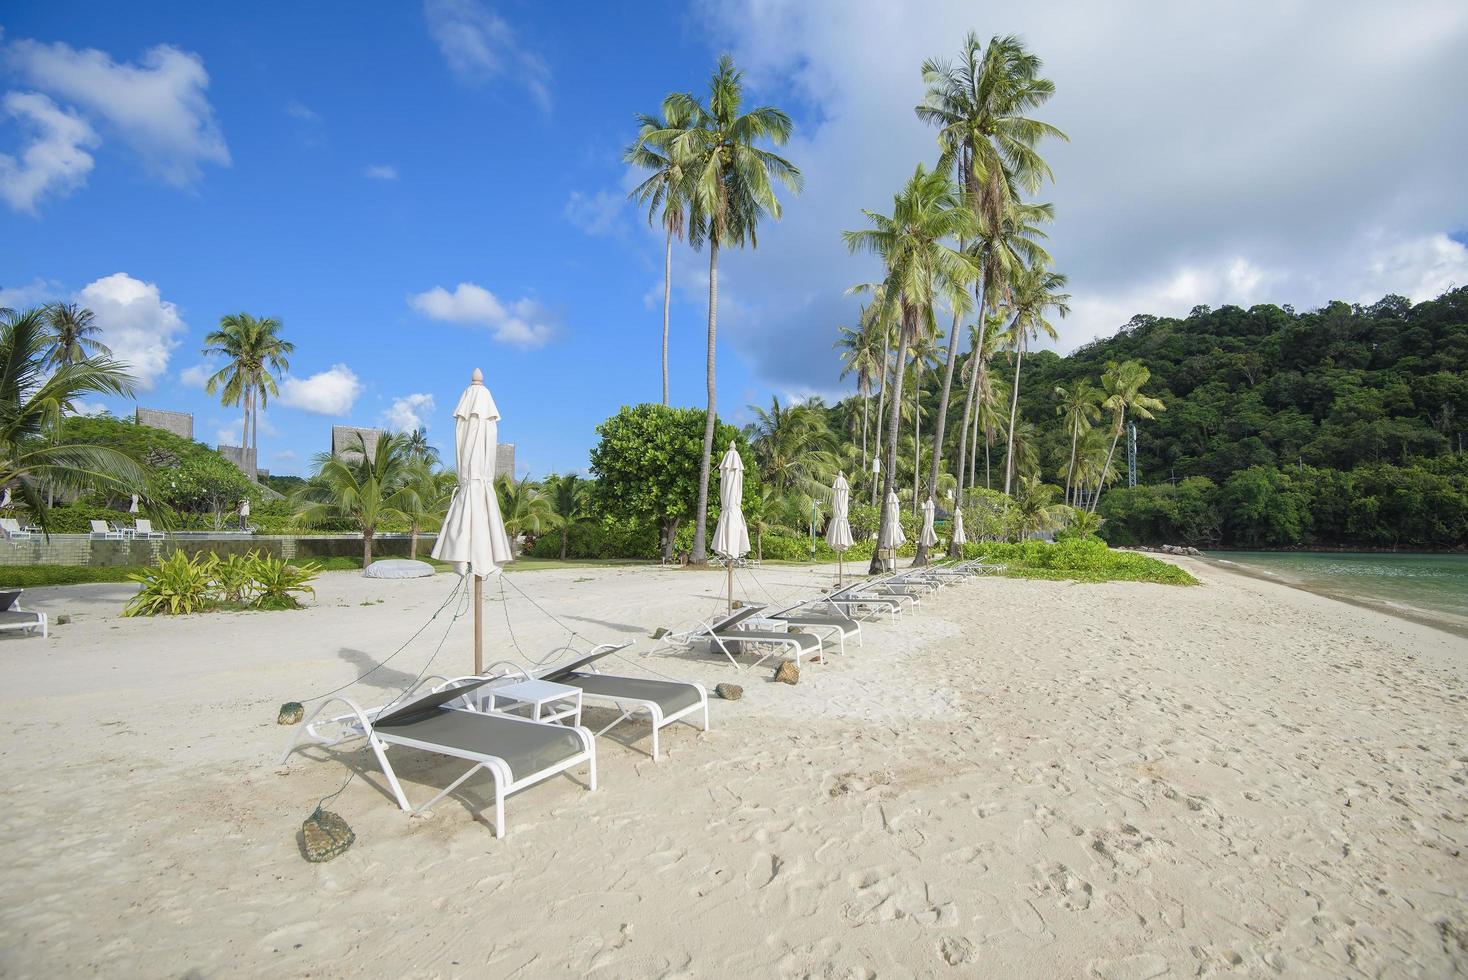 prachtig uitzicht landschap van lounge stoelen op tropisch strand, de smaragdgroene zee en wit zand tegen blauwe lucht, maya baai in phi phi eiland, thailand foto